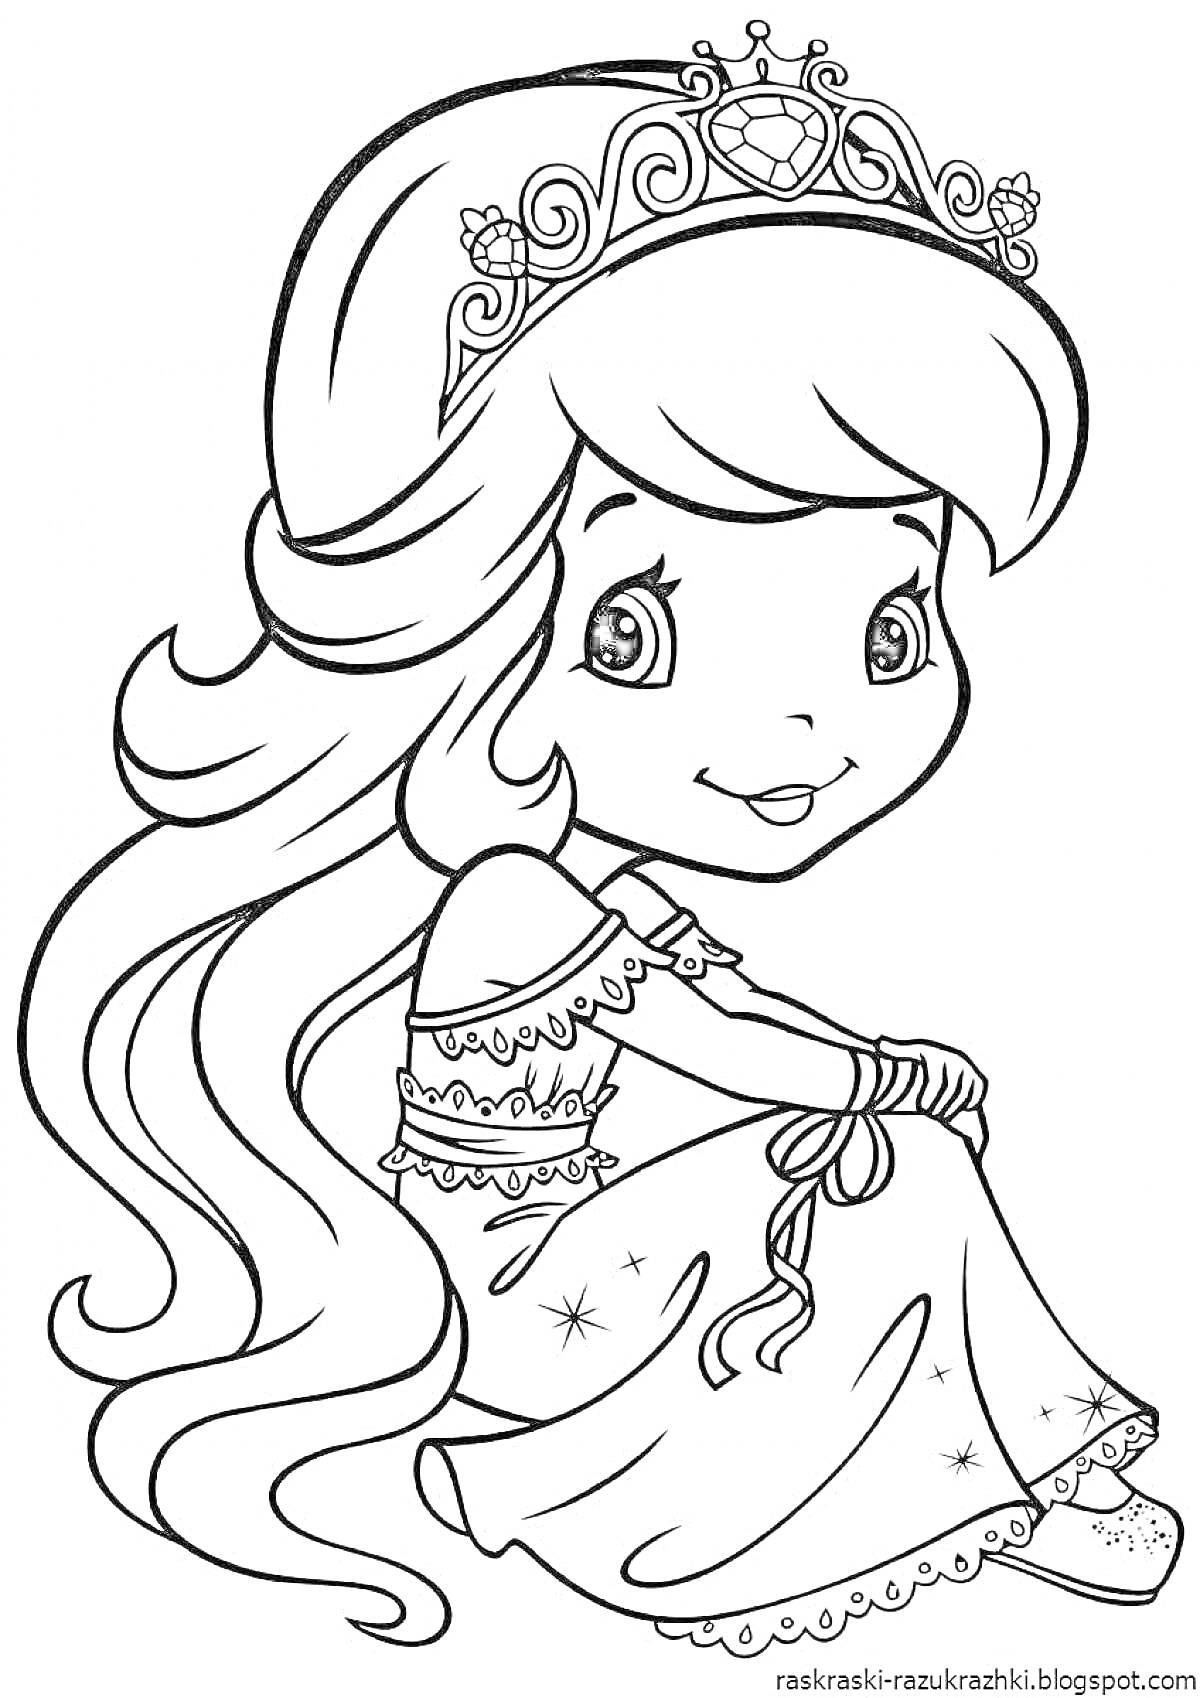 Раскраска Принцесса с длинными волосами в короне и платье